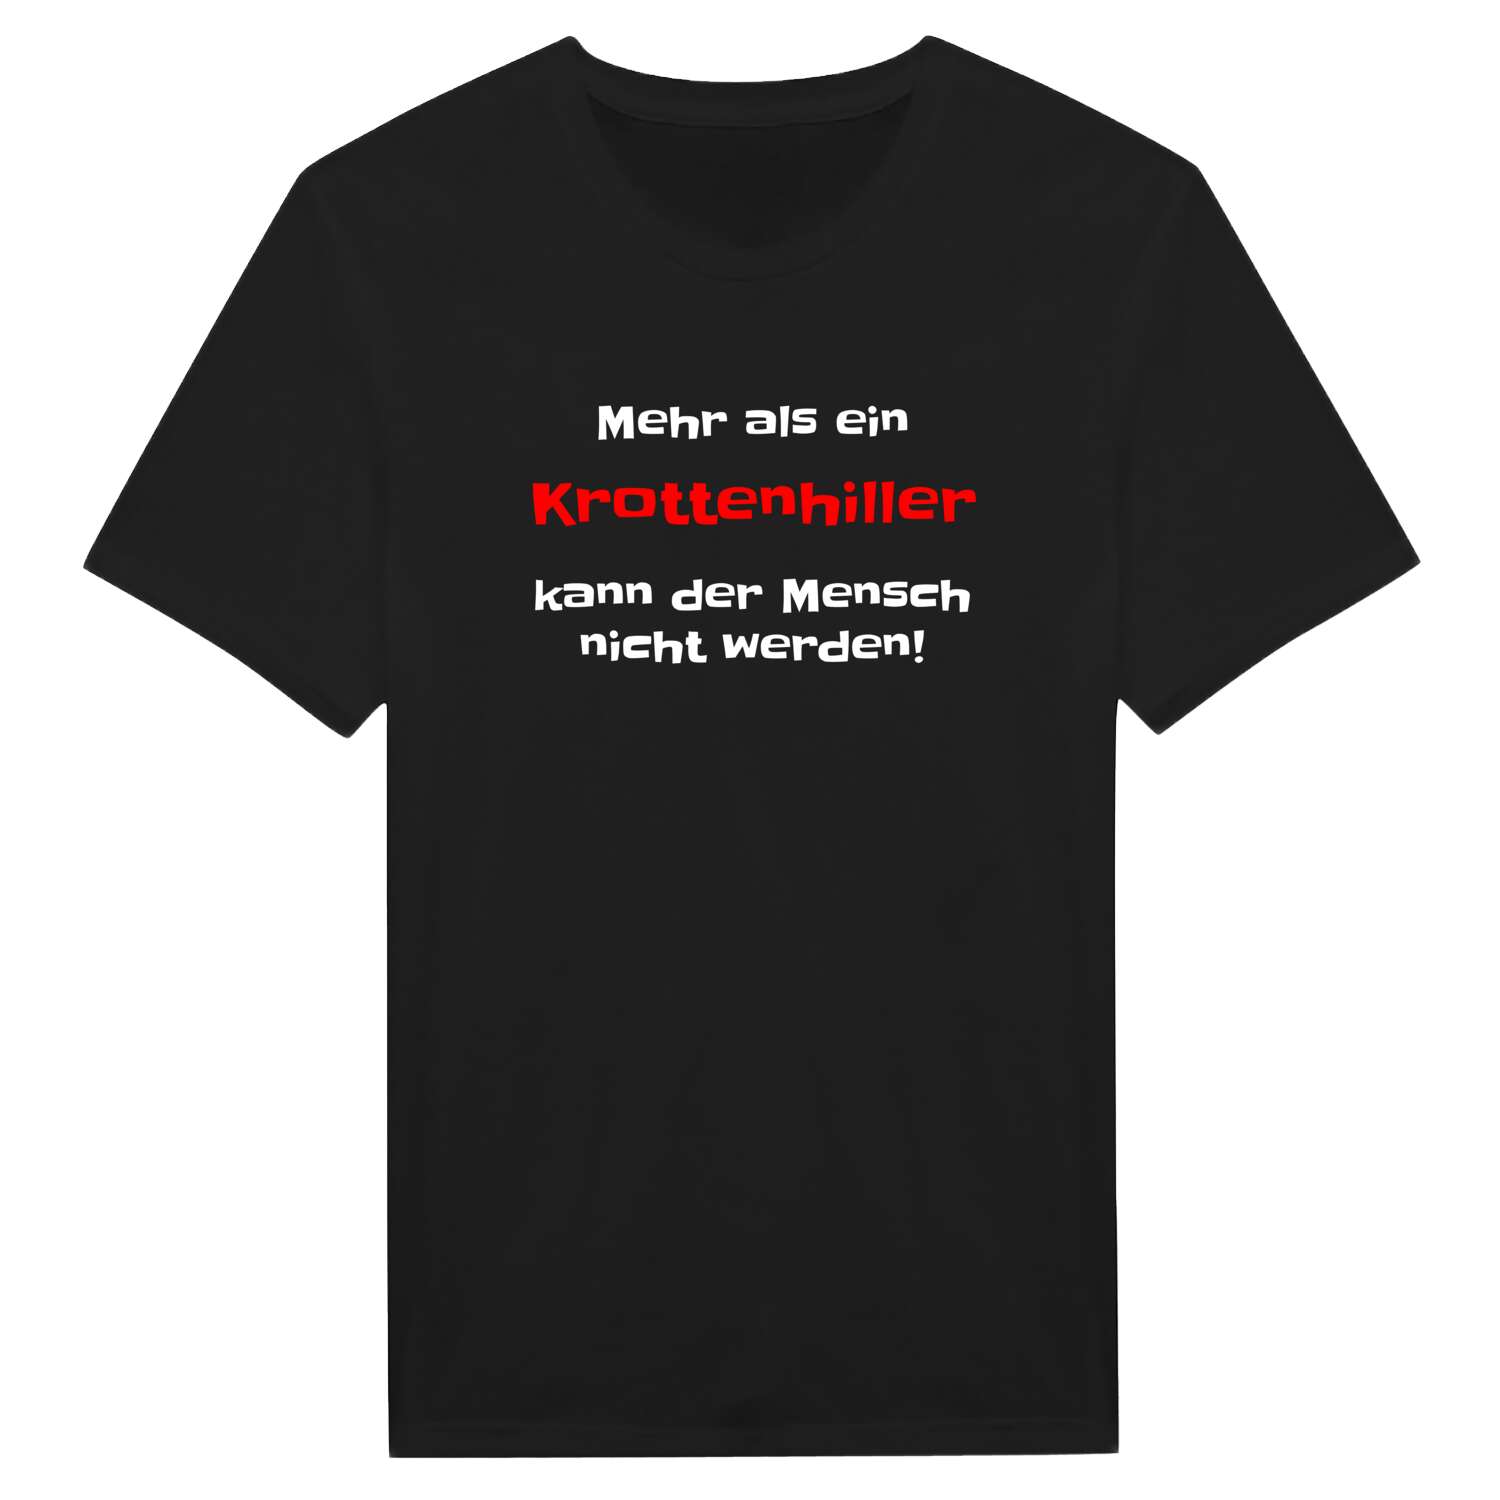 Krottenhill T-Shirt »Mehr als ein«